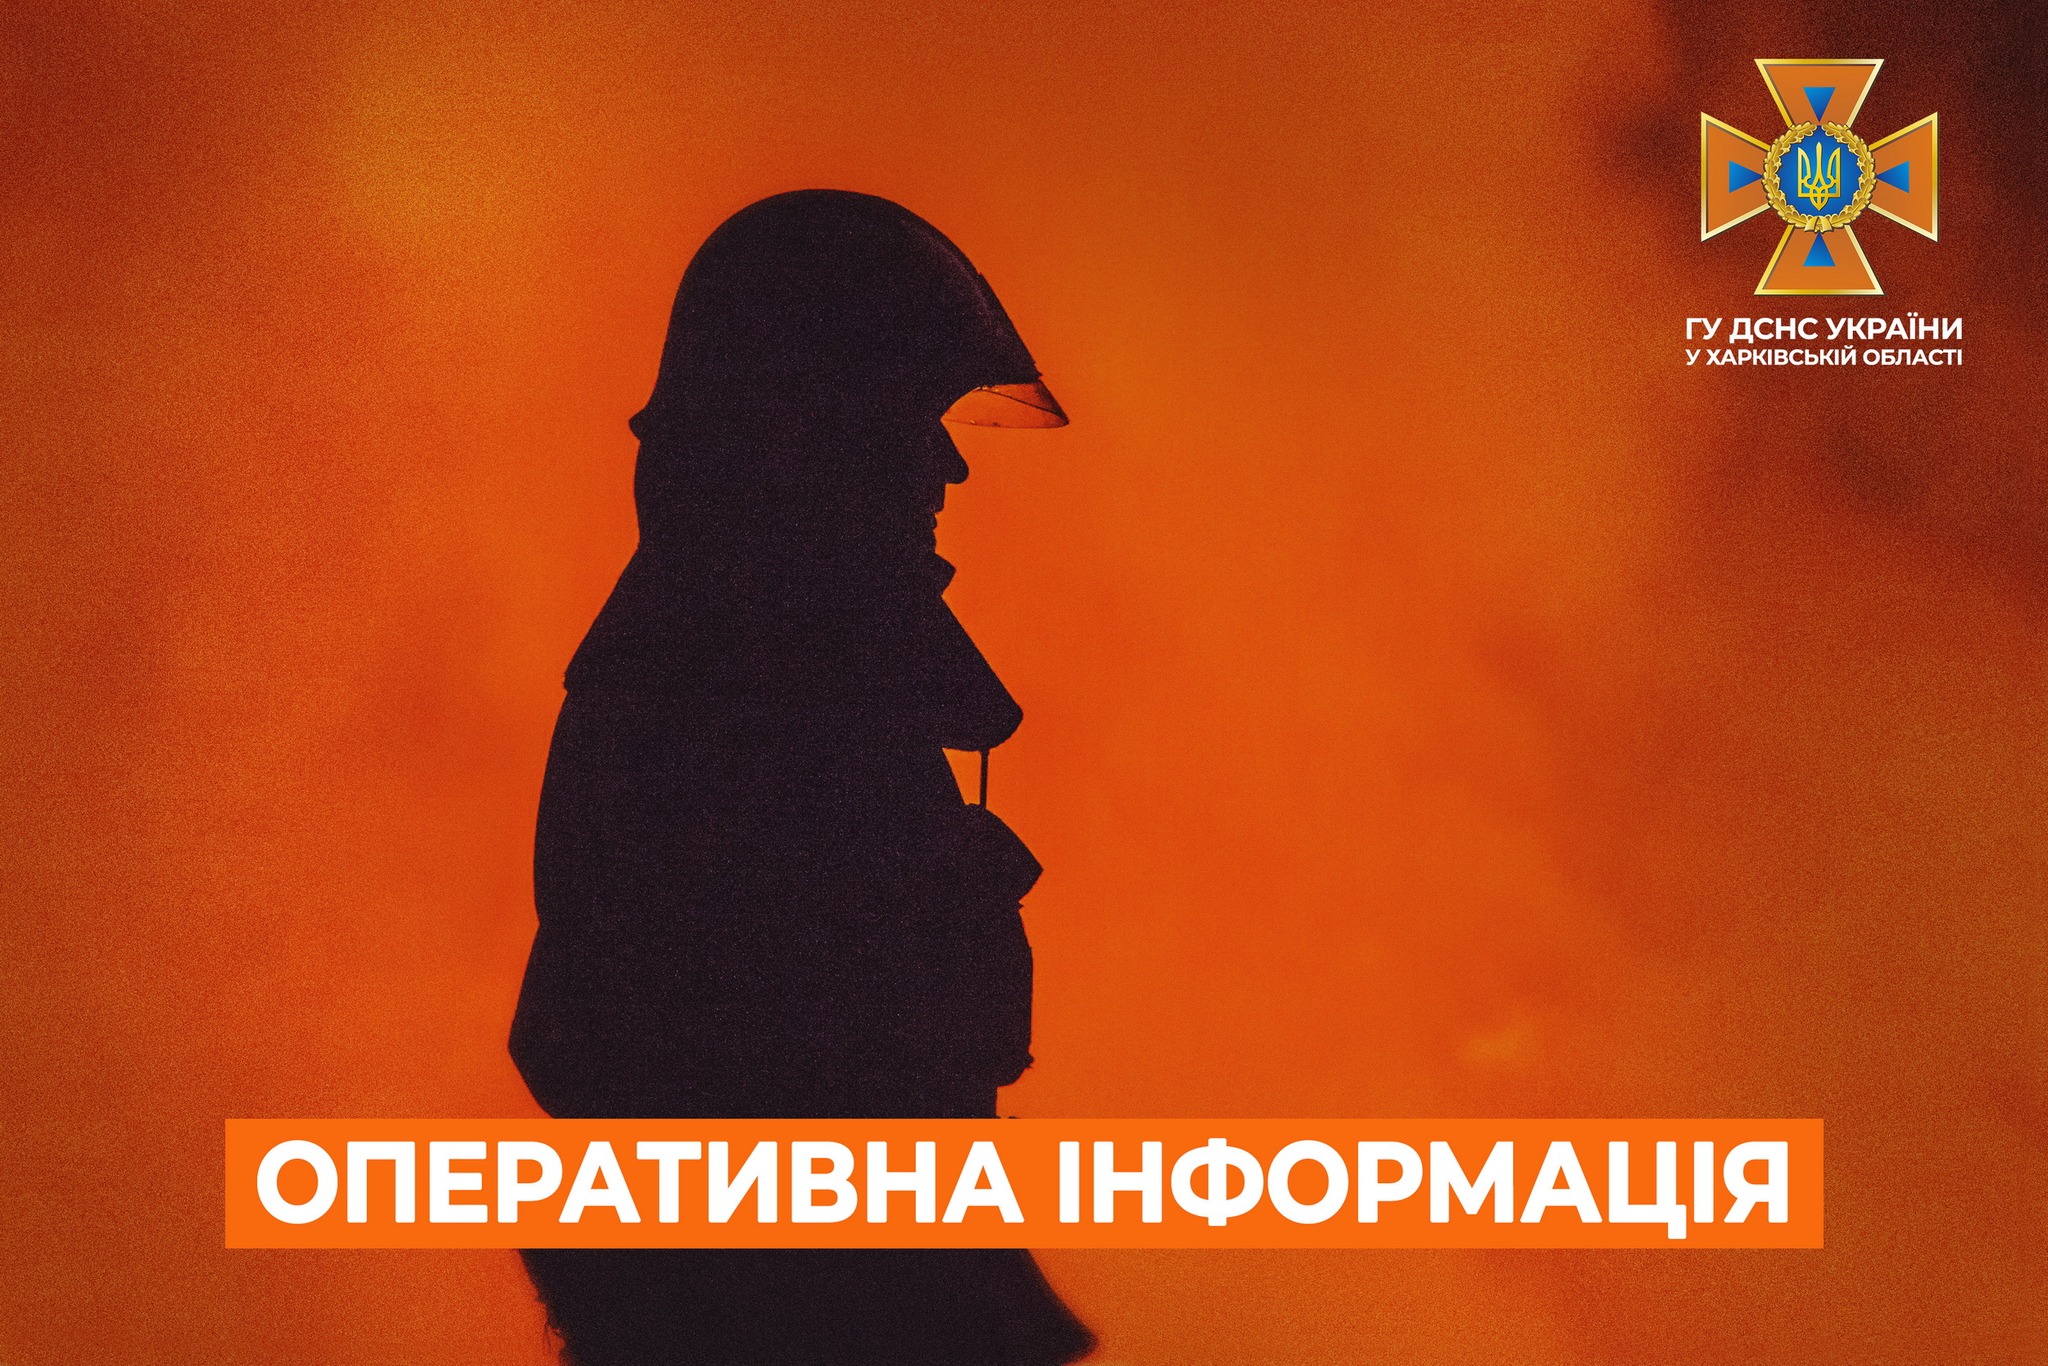 Масштабный пожар произошел в Харькове вечером 12 ноября — ГСЧС